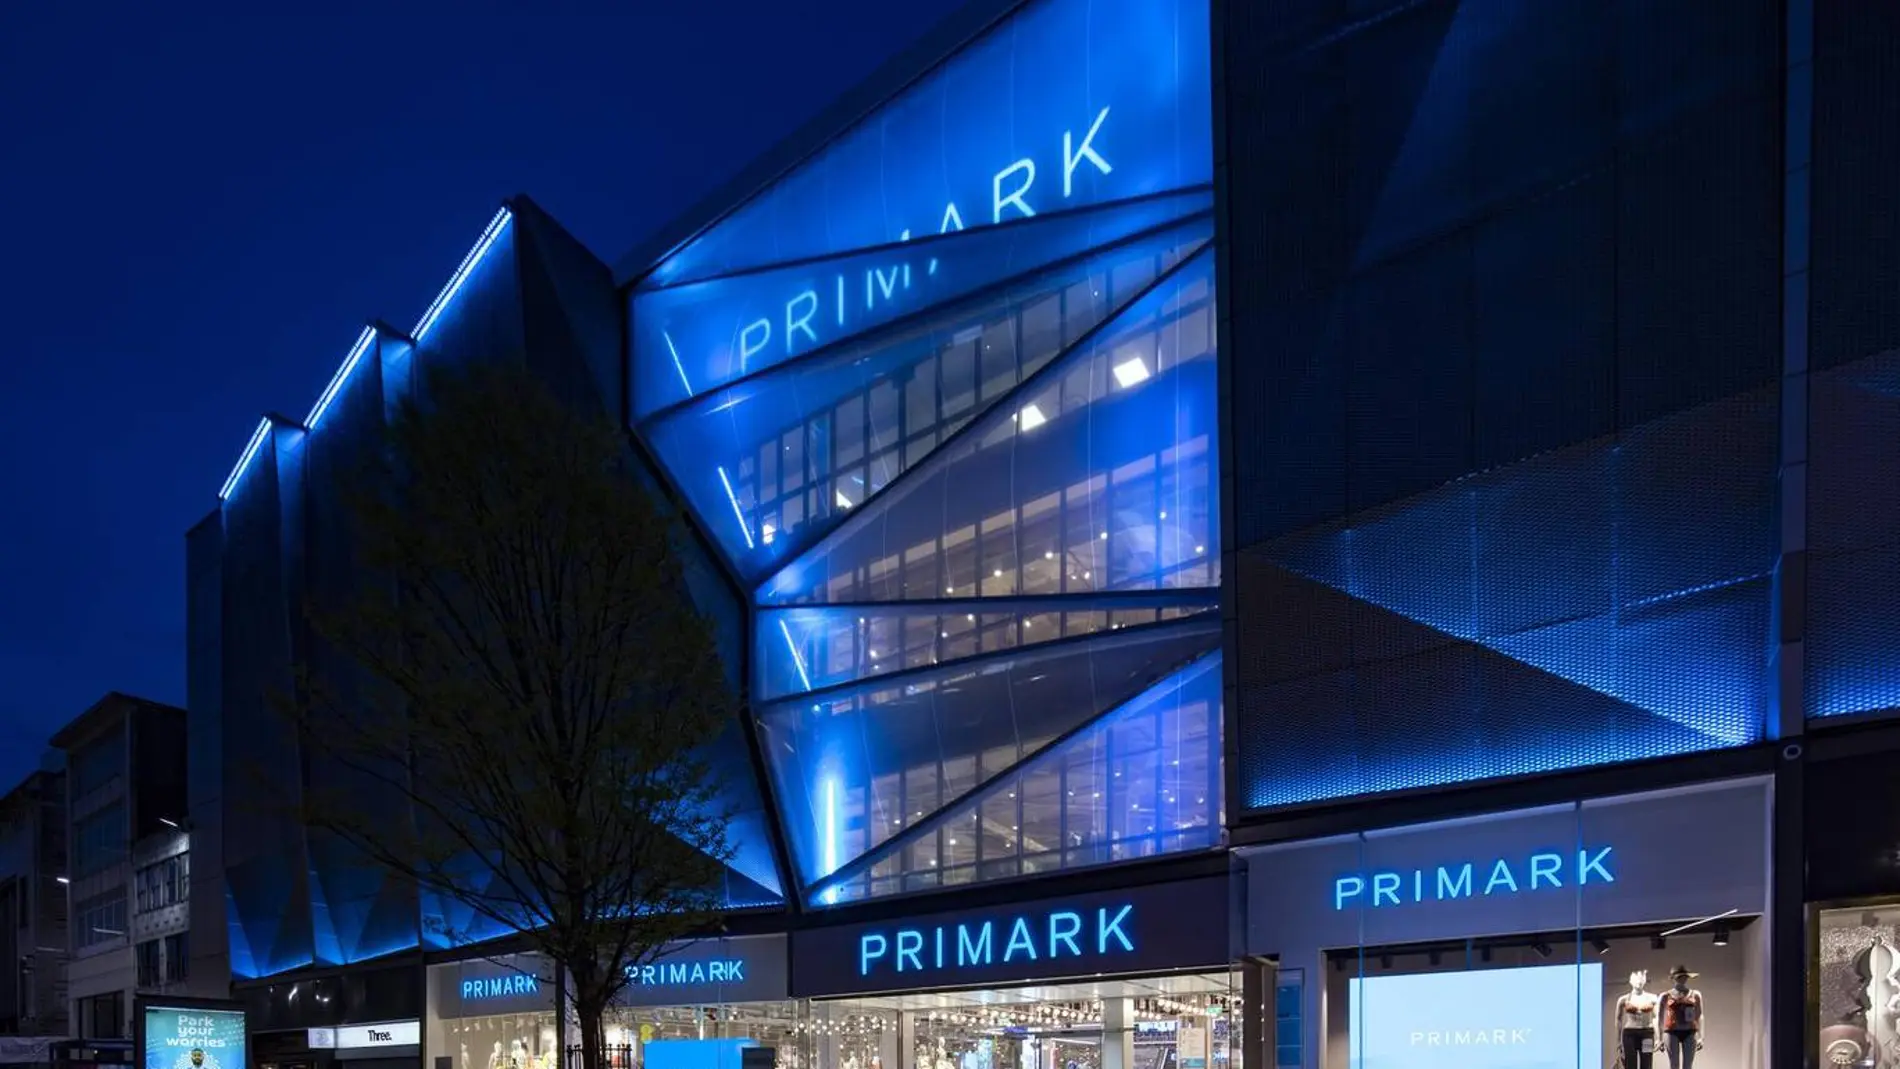 Imagen de la fachada del Primark de Birmingham